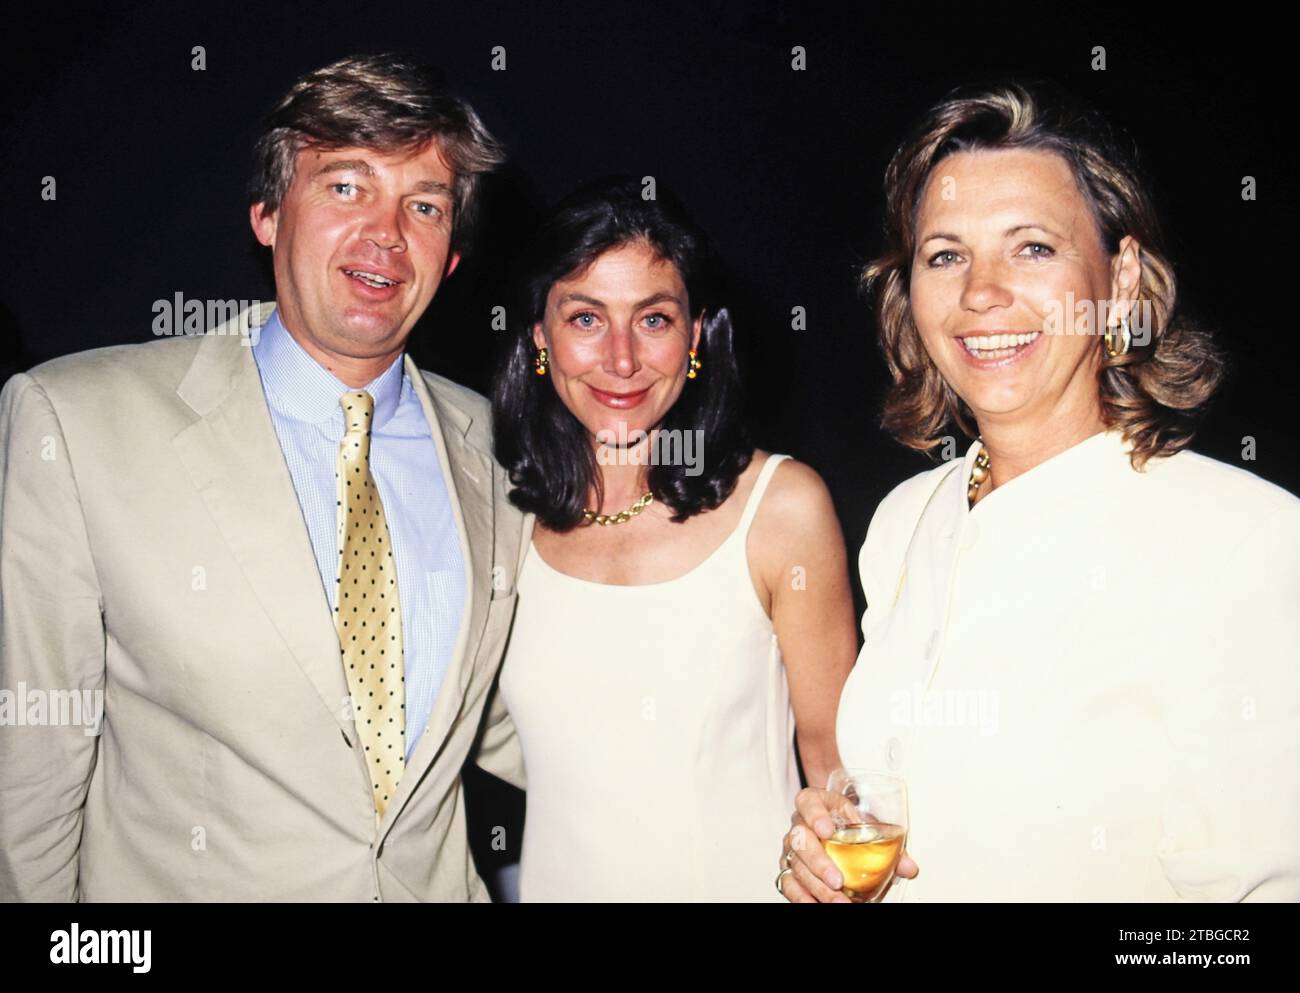 Medienanwalt Matthias Prinz mit Ehefrau Alexandra Freifrau von Rehlingen und Fernsehjournalistin Maria von Welser, 1997. Foto Stock